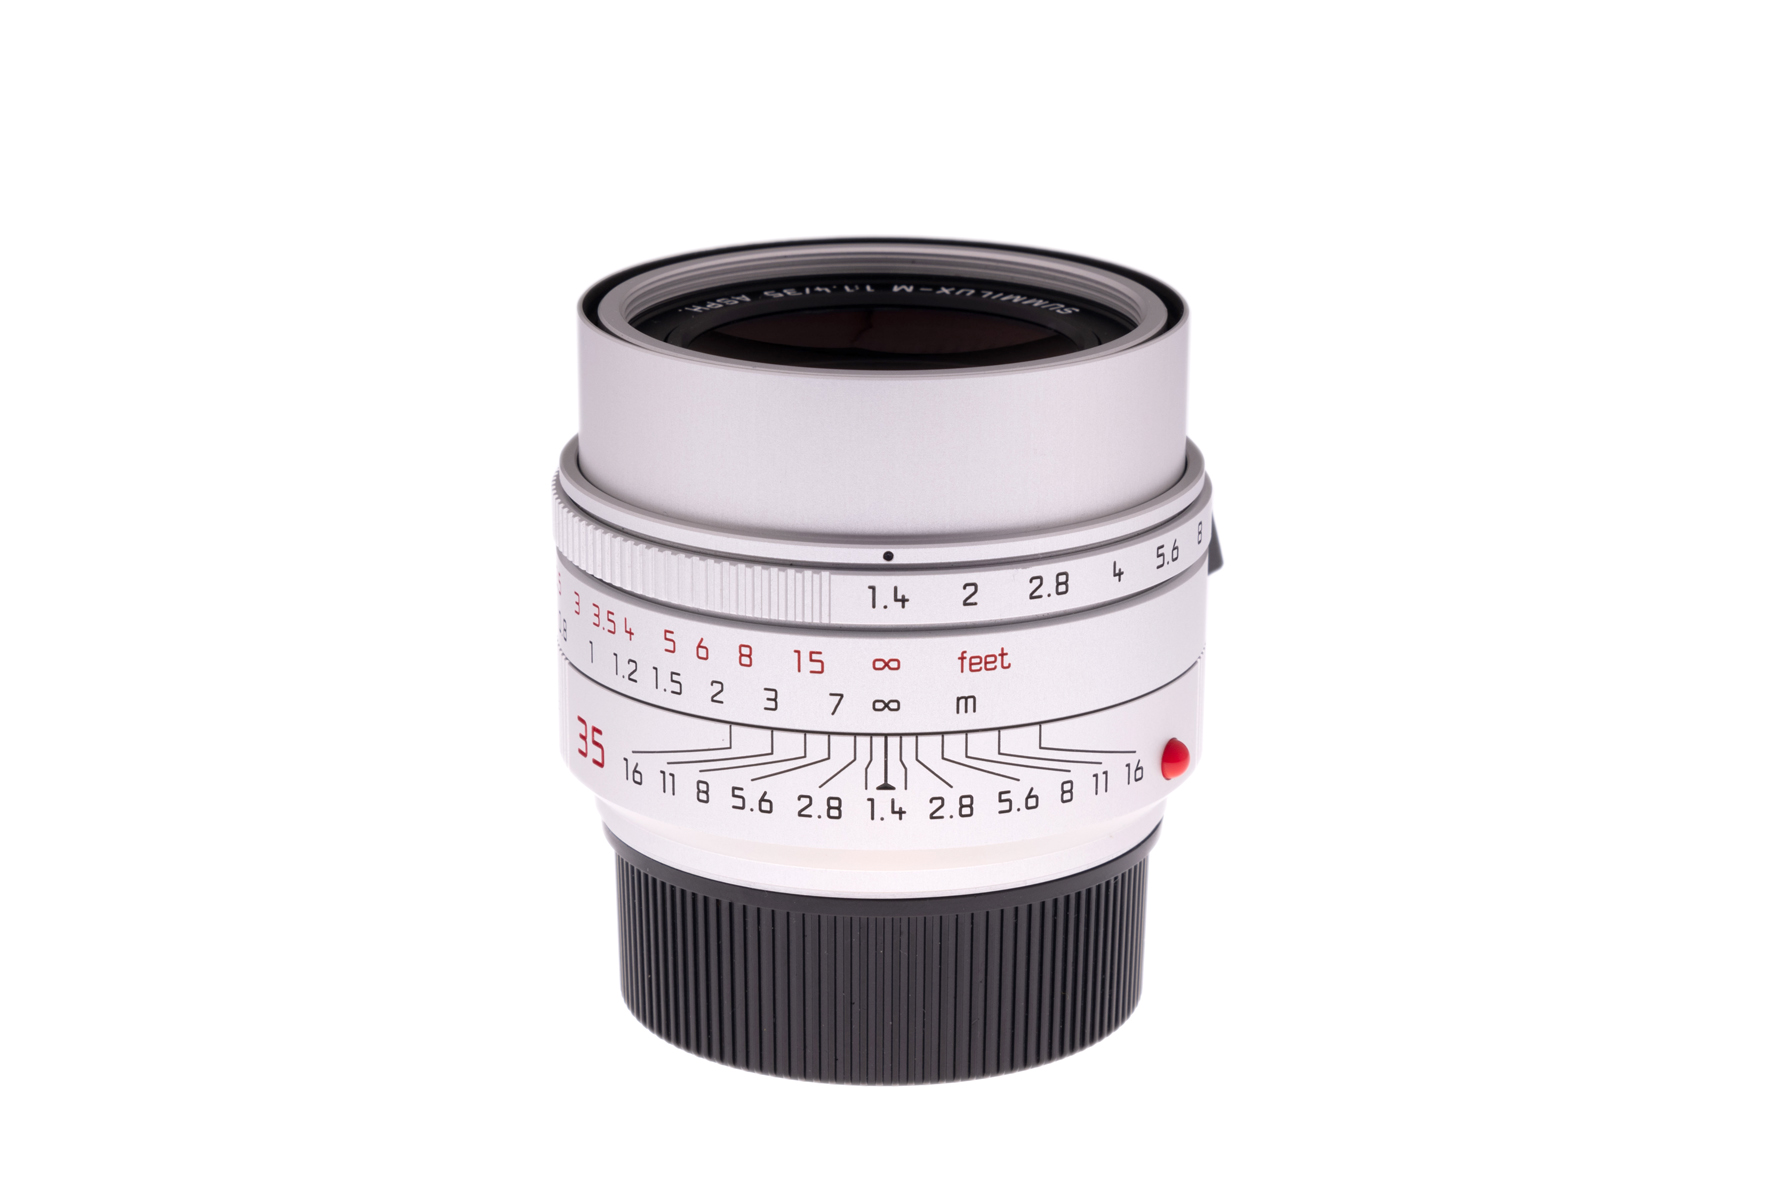 Leica Summilux-M, silbern 1:1,4/35mm ASPH.